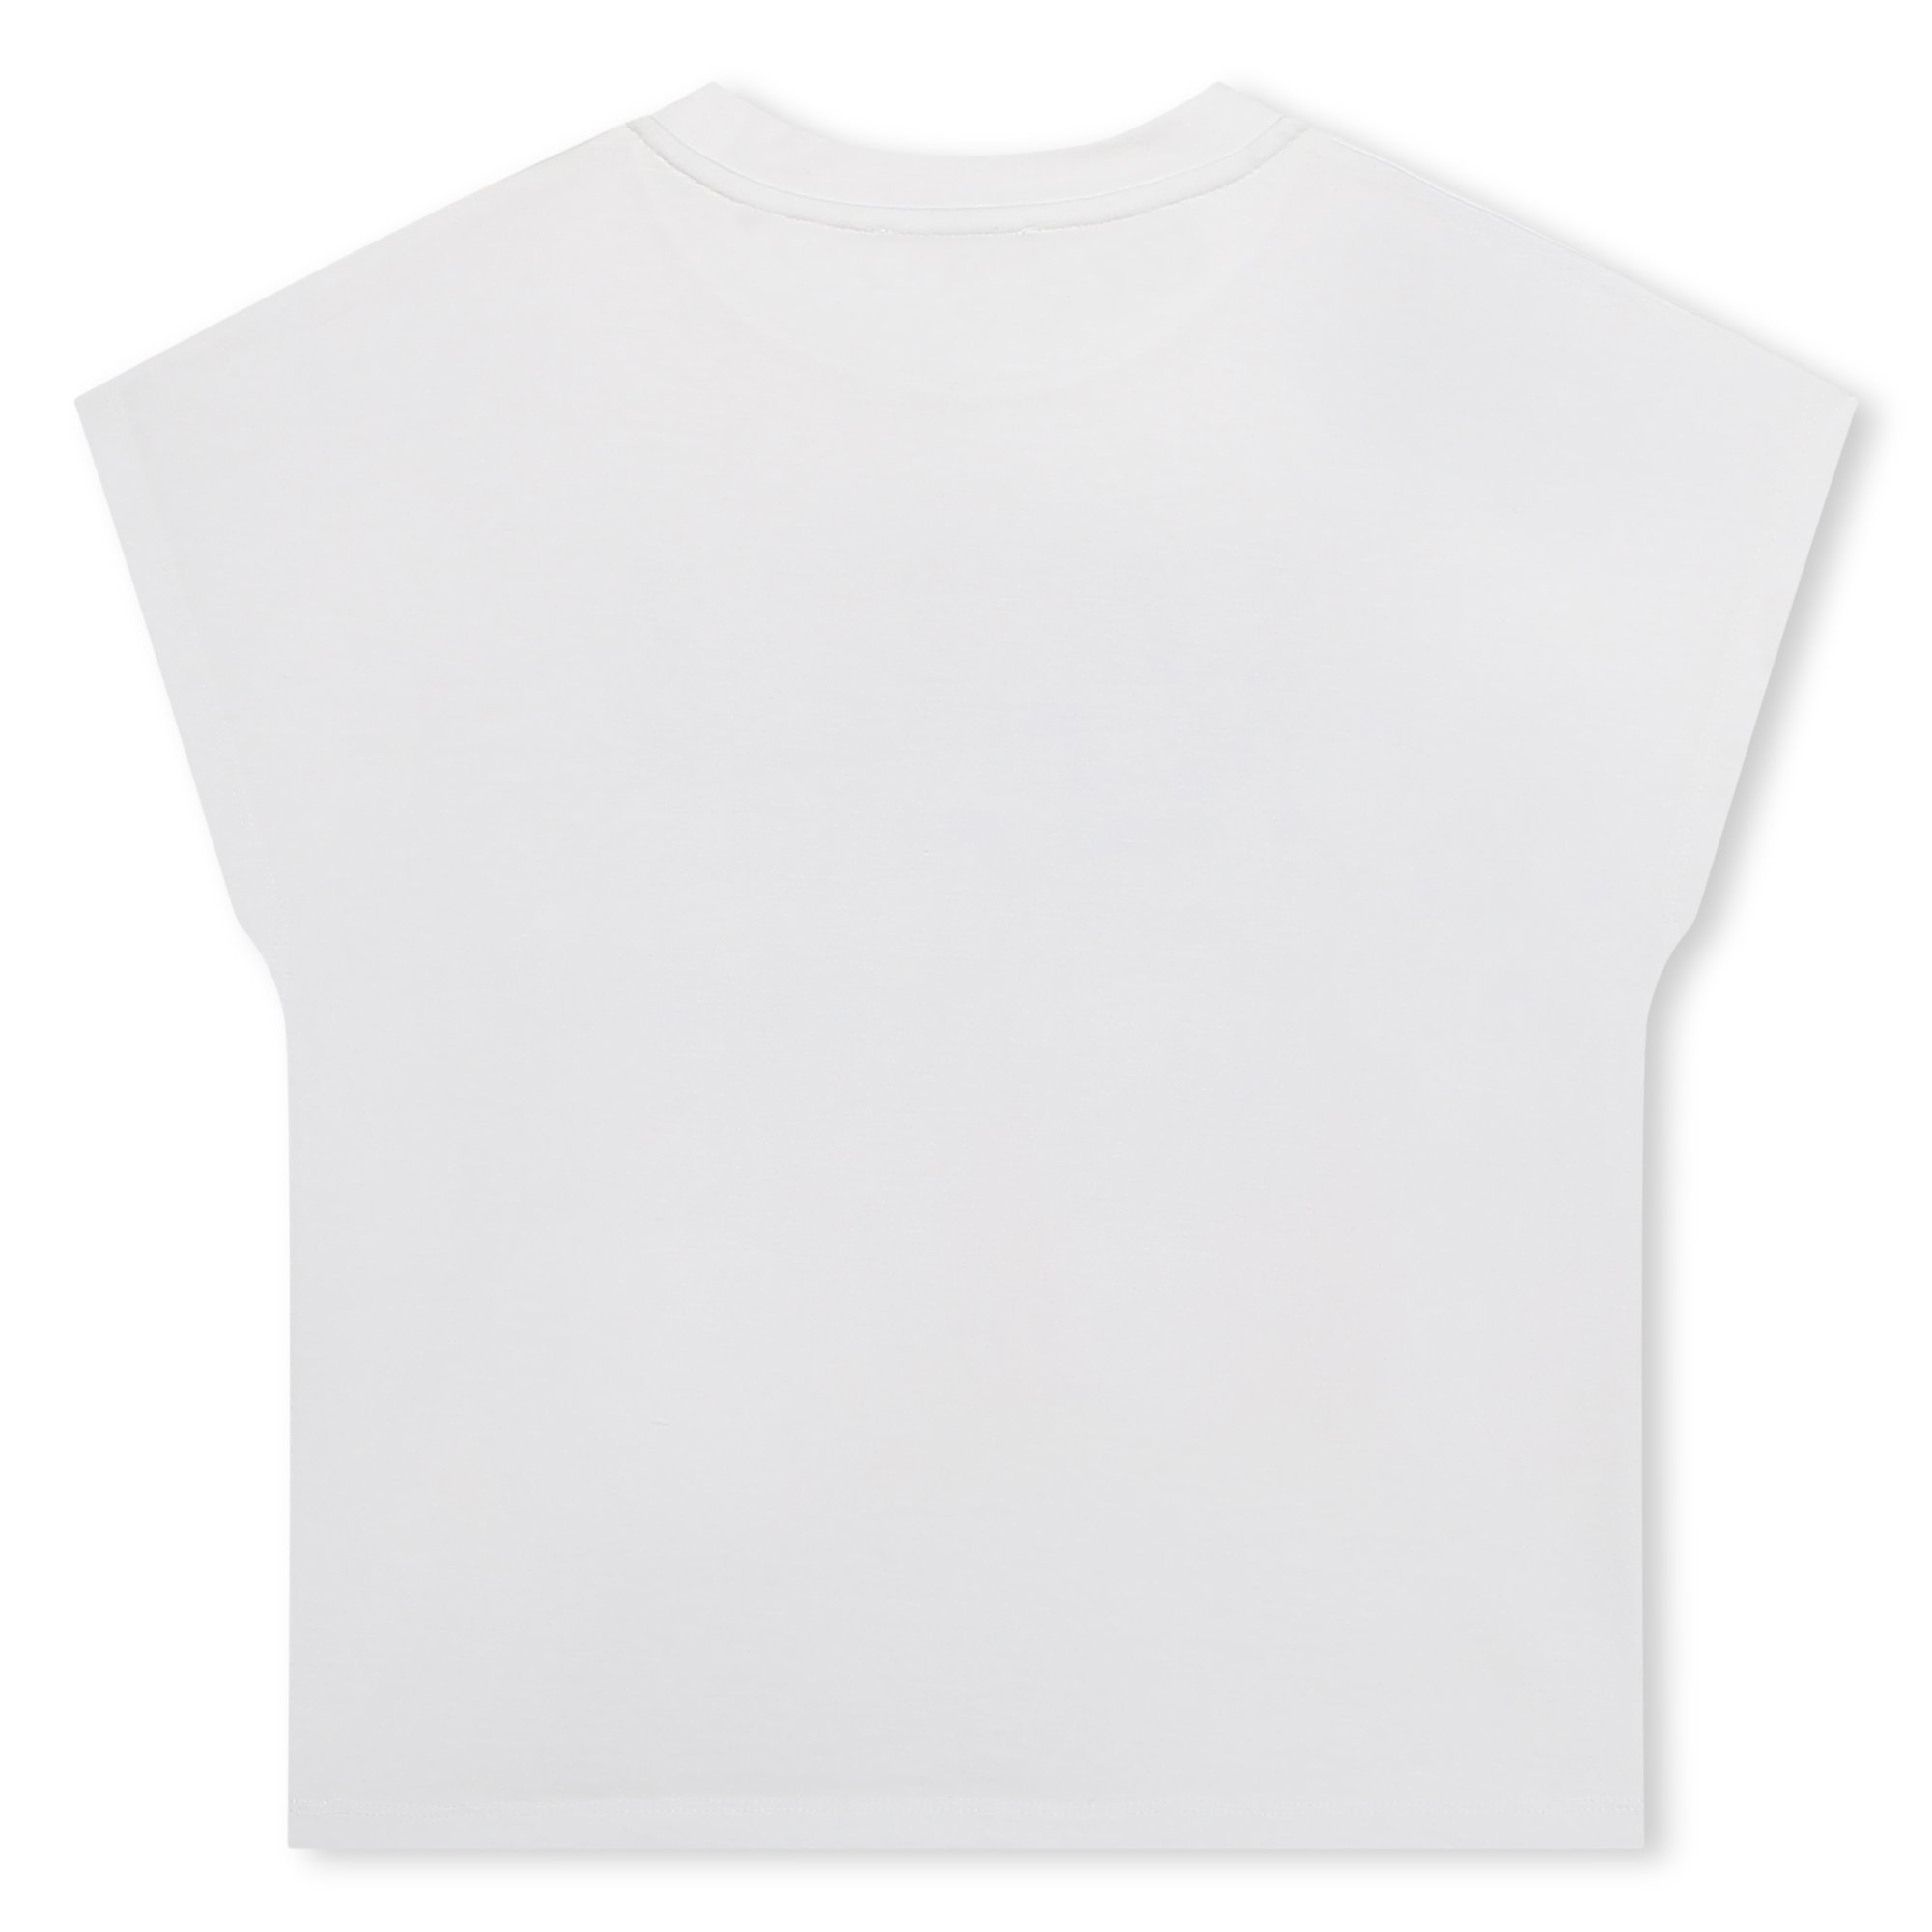 Short-sleeved T-shirt DKNY for GIRL